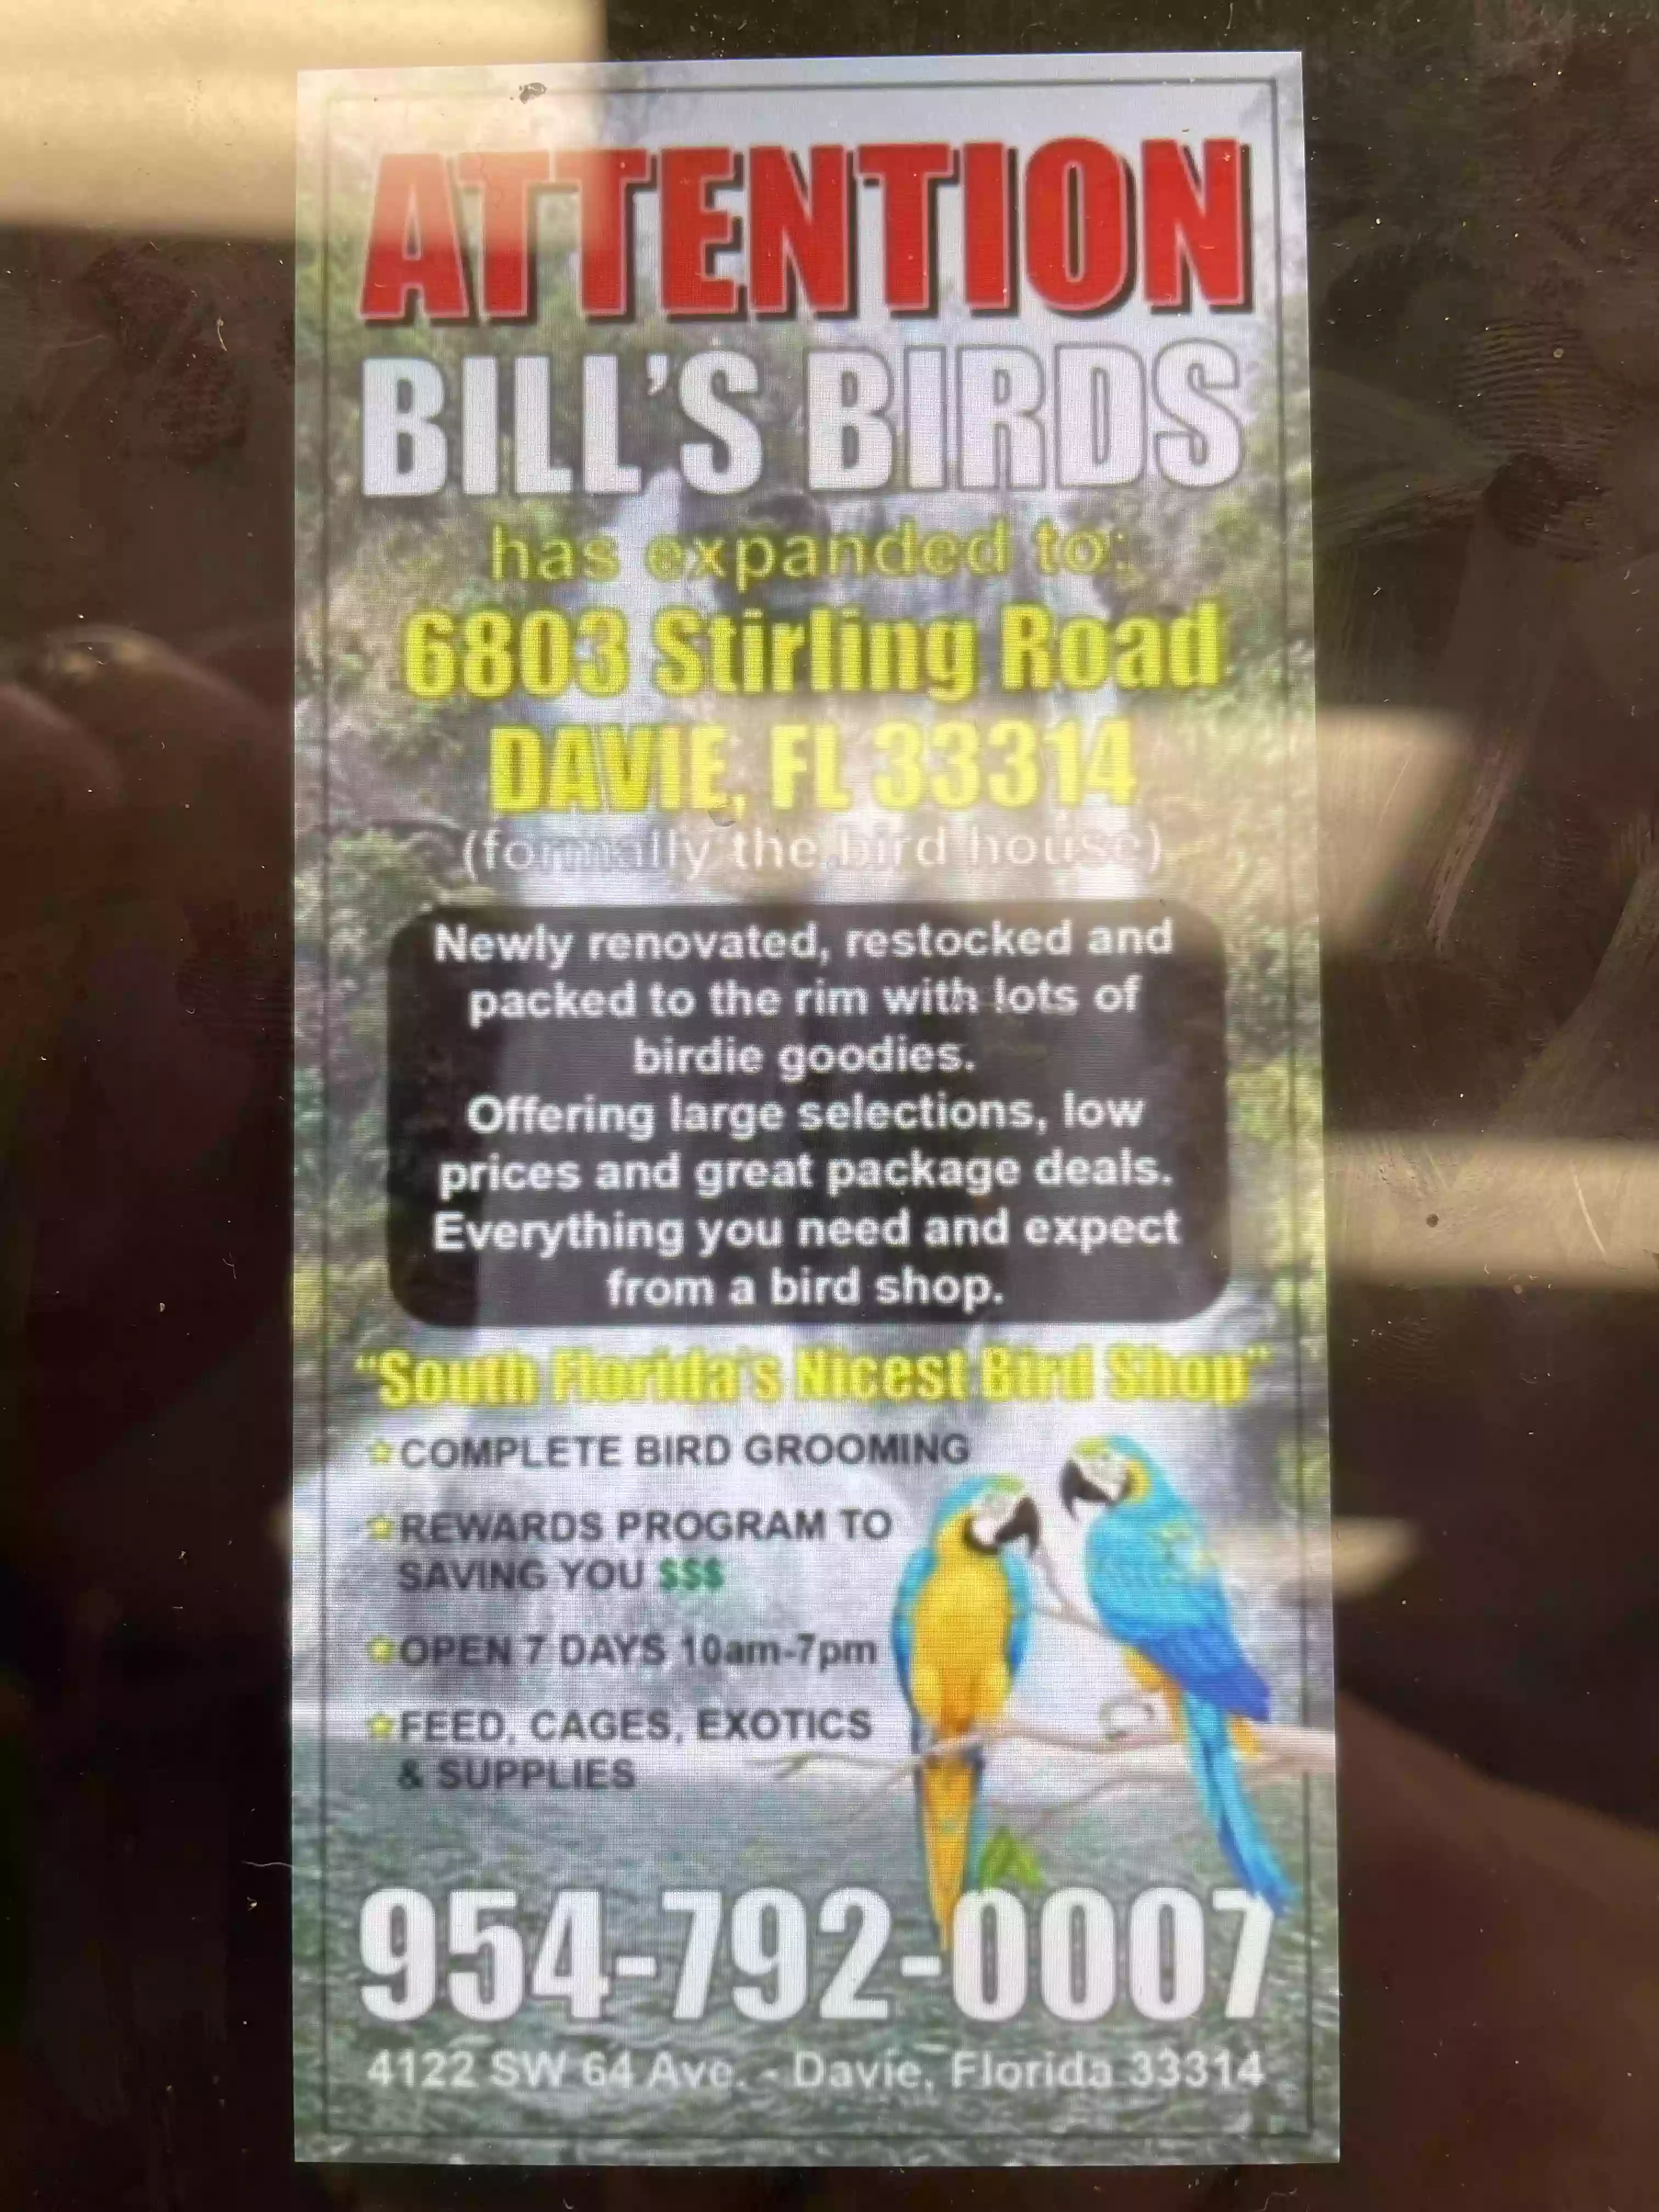 Bill's Birds